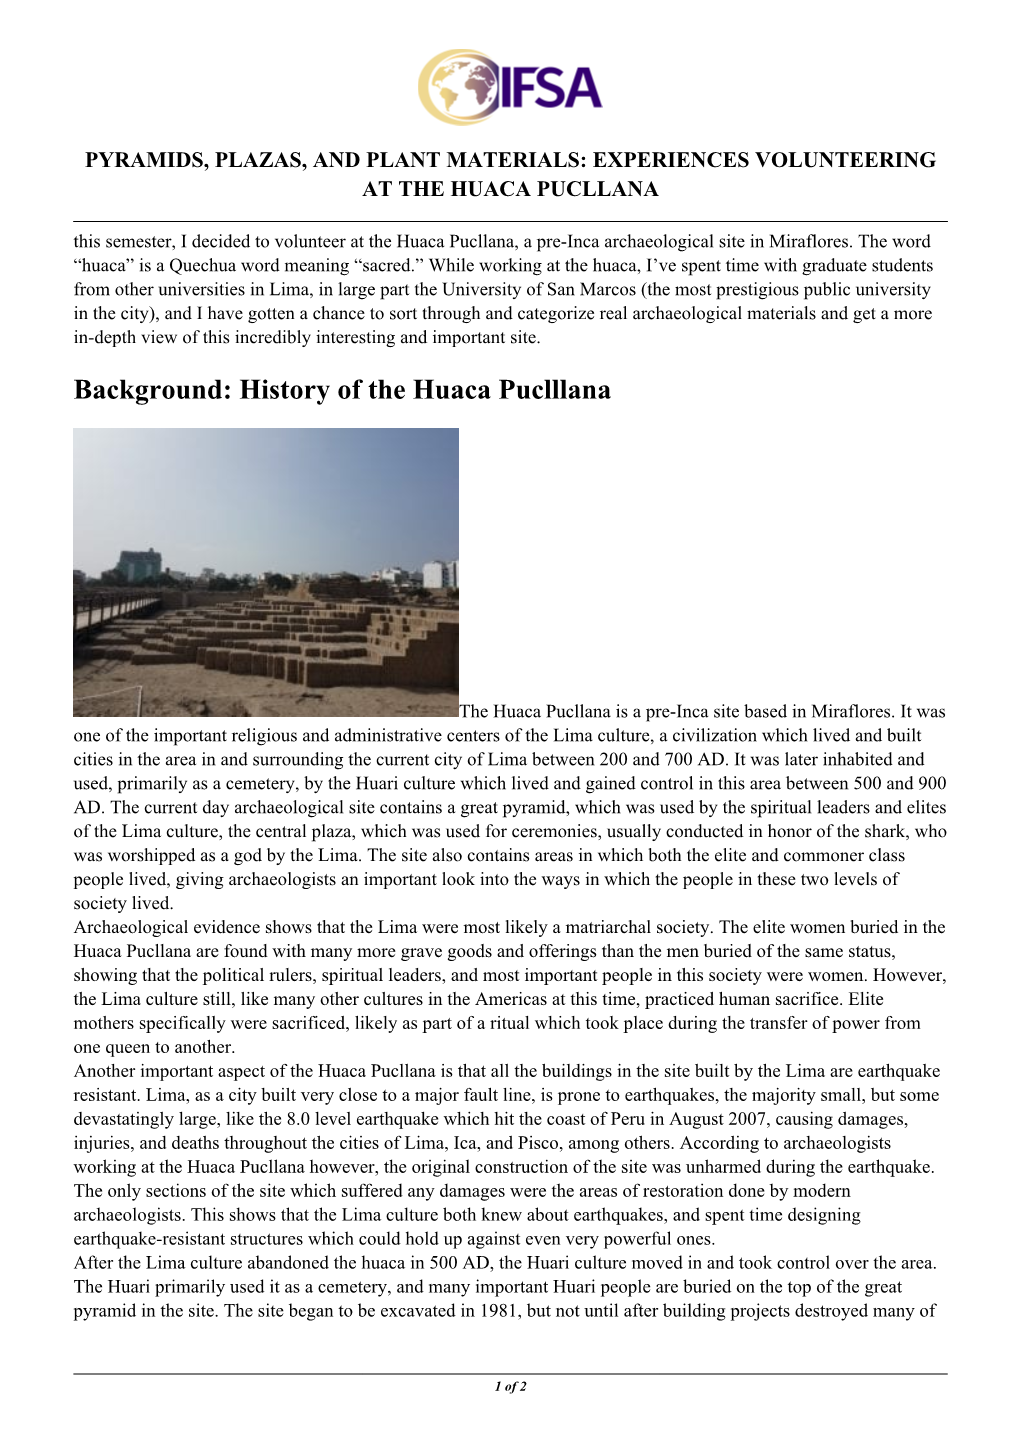 History of the Huaca Puclllana